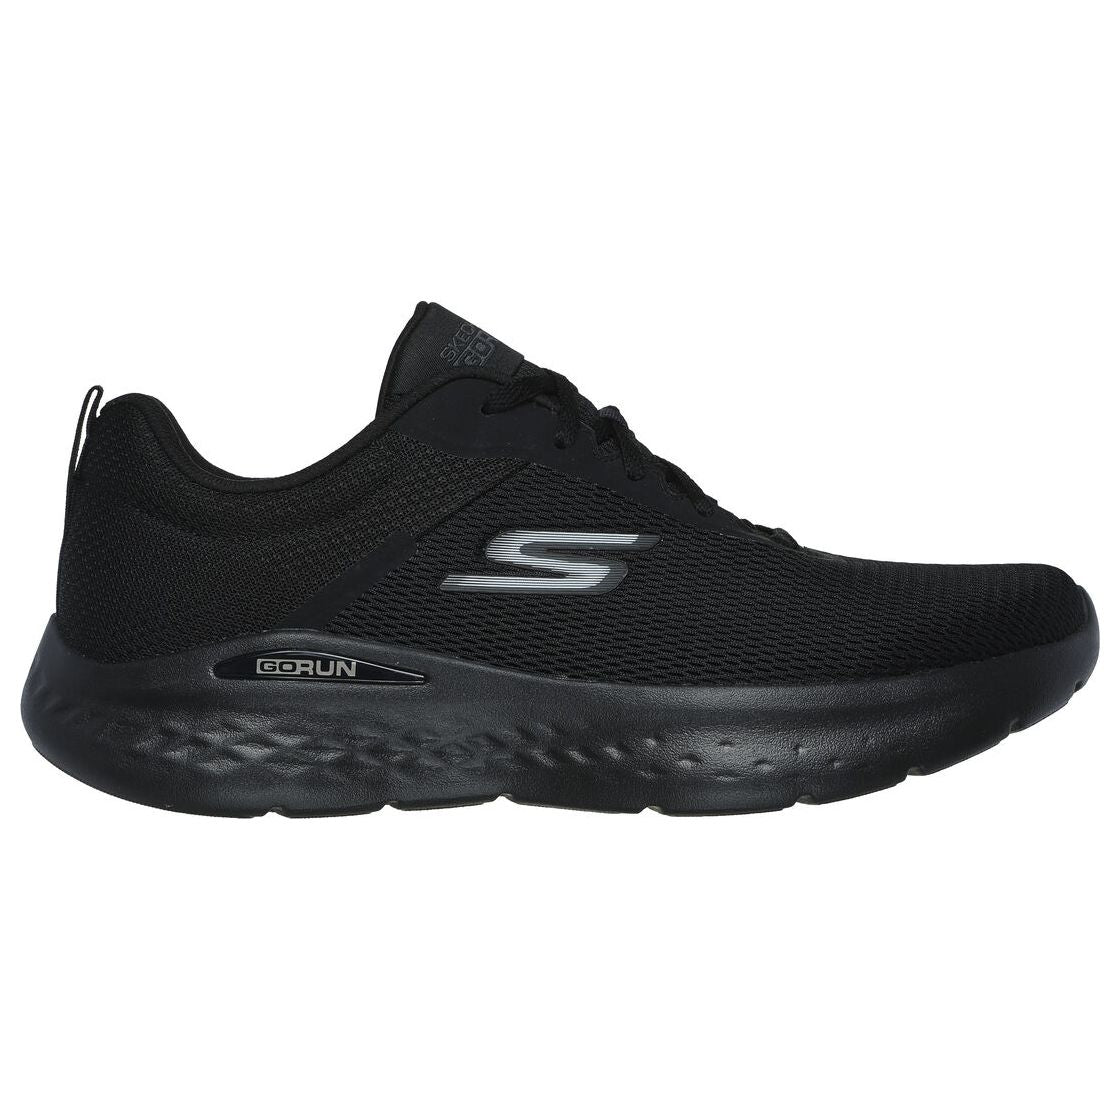 Skechers GO RUN Lite - Quick Stride נעלי הליכה לגברים